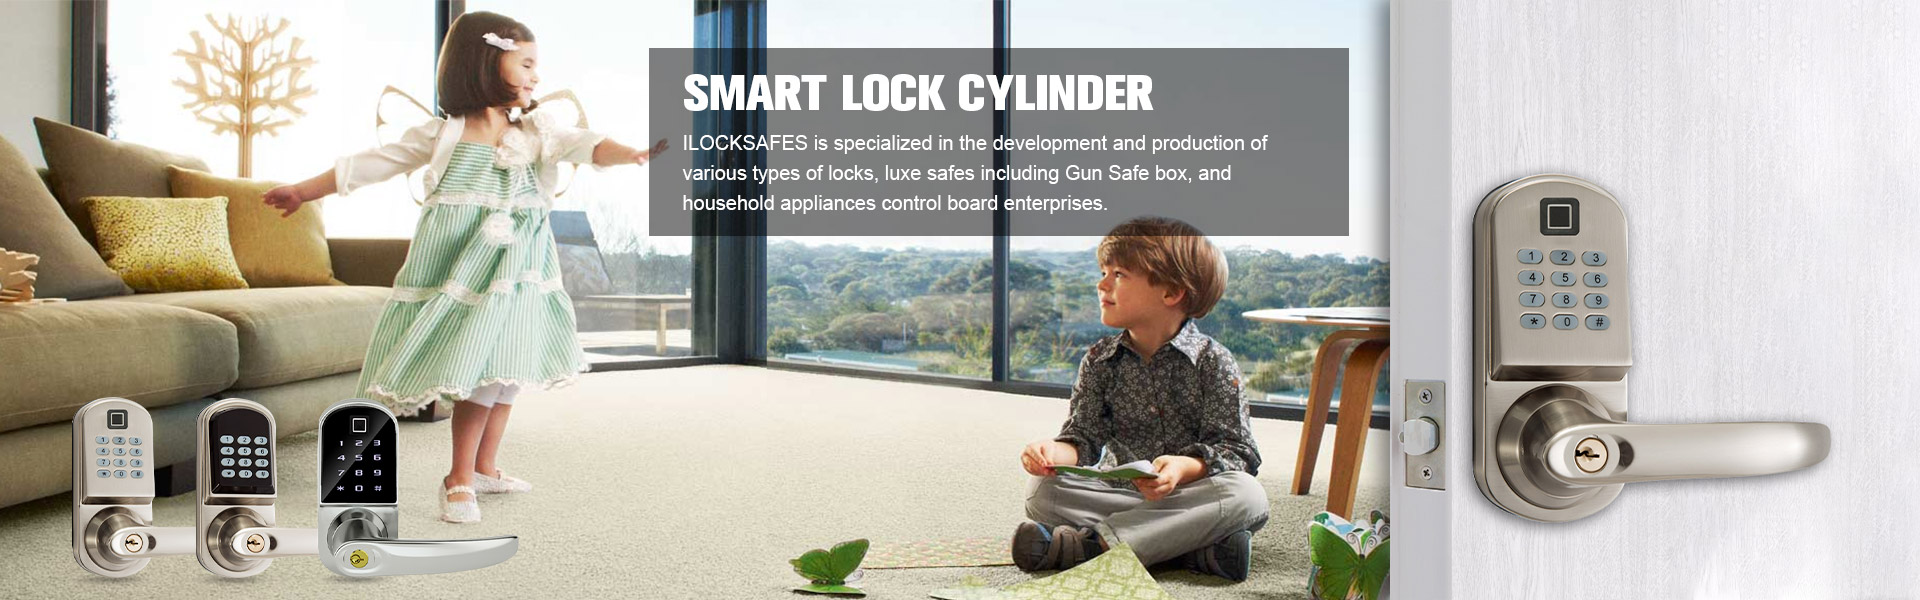 Smart lock safes